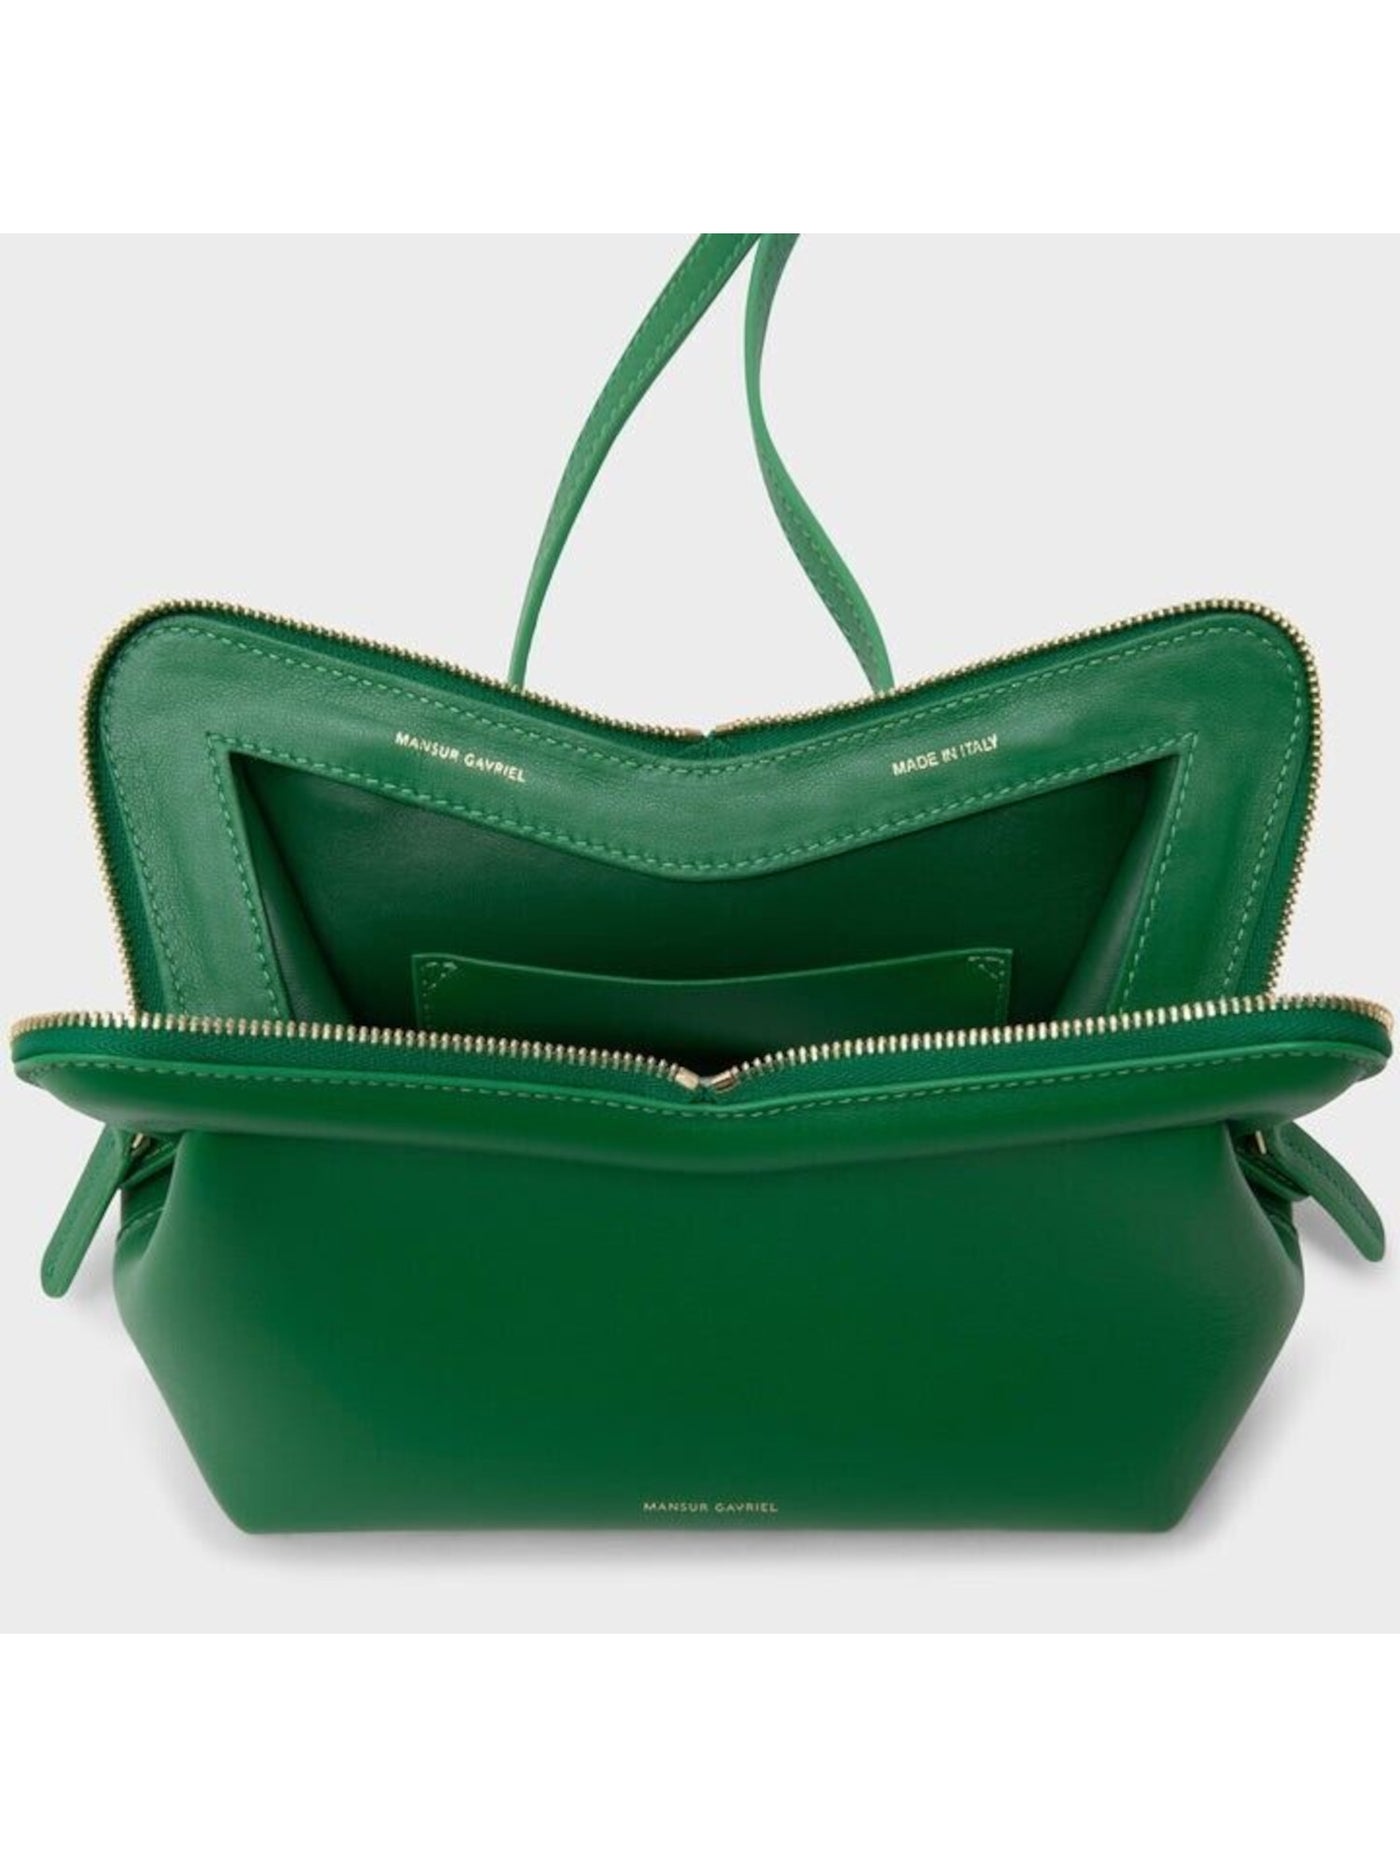 MANSUR GAVRIEL Women's Green Solid Leather Single Strap Shoulder Bag